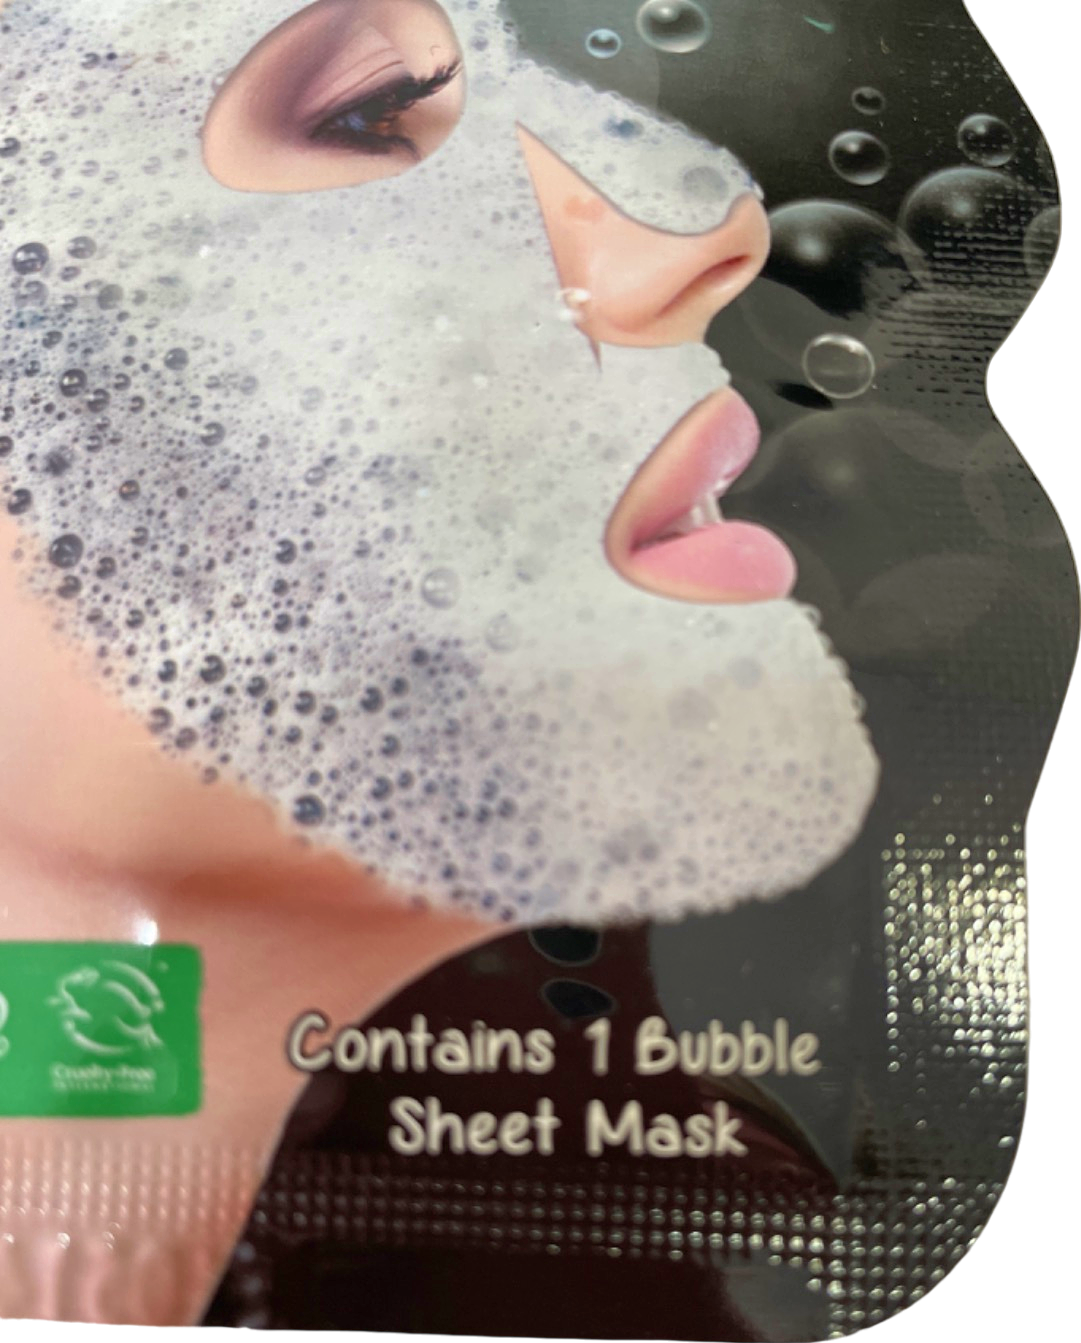 7th Heaven Charcoal Detox Bubble Mask No Shade 1 Bubble Sheet Mask